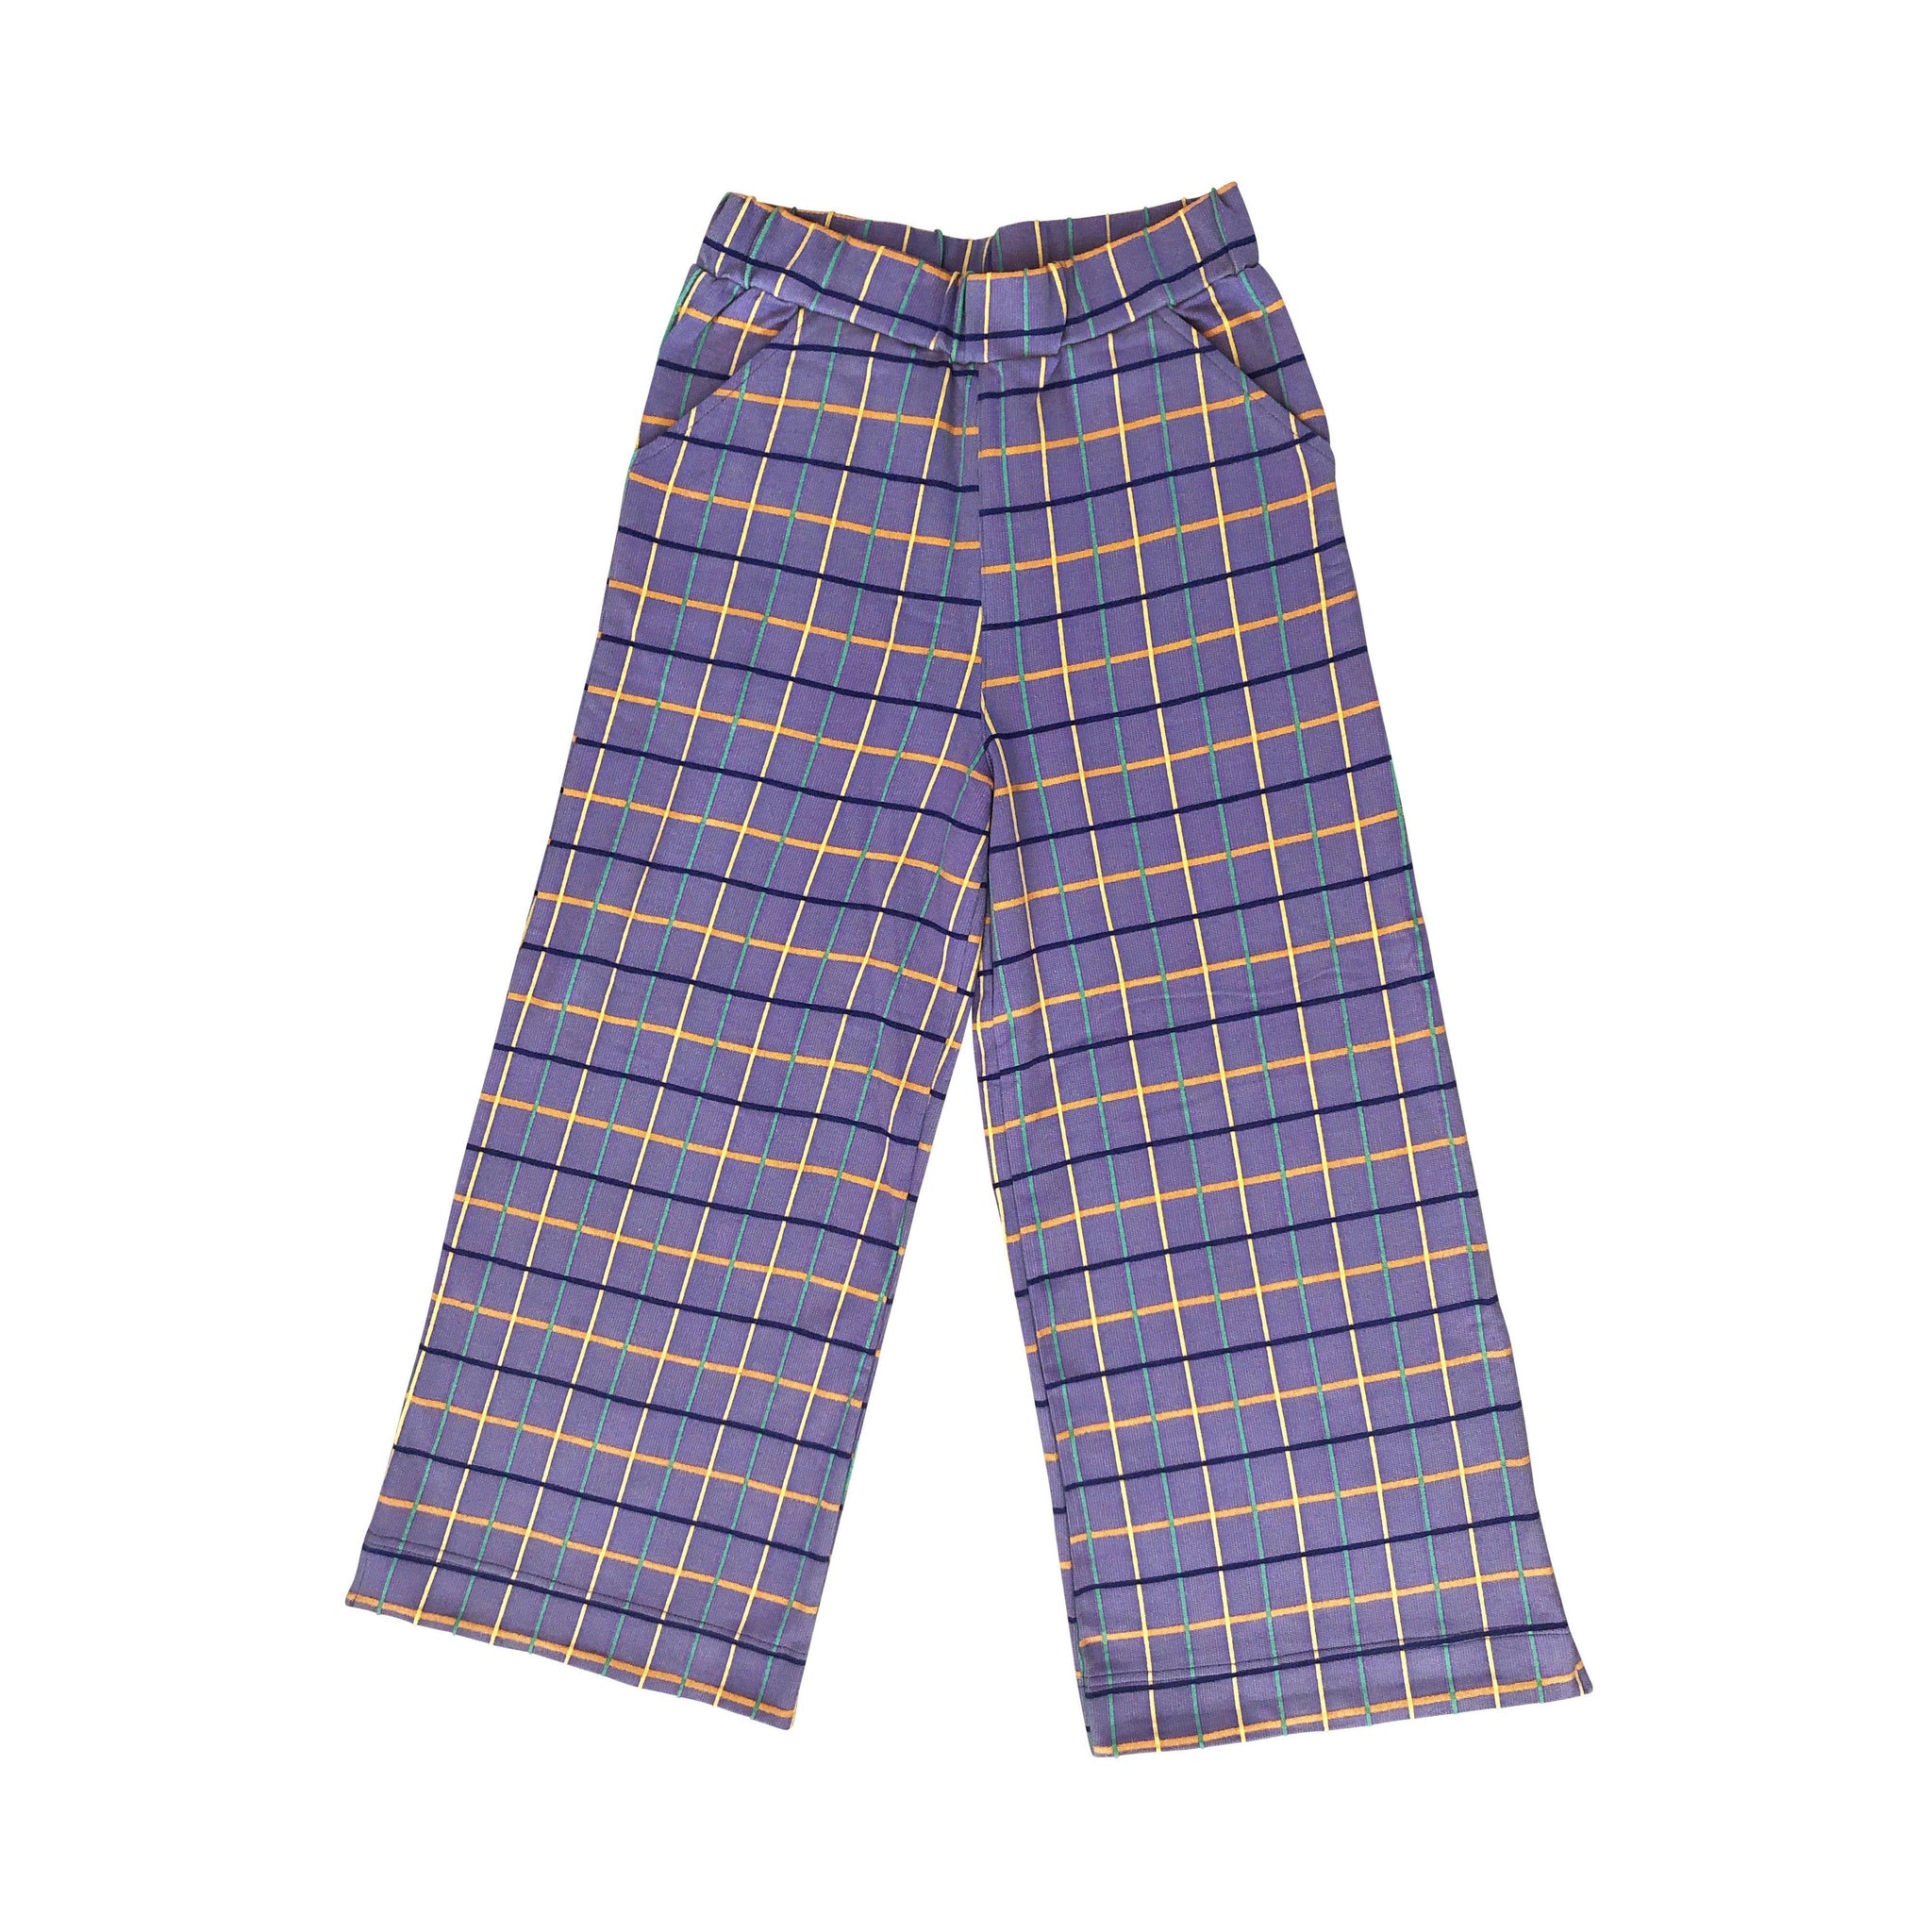 Moromini - Bel Air Women's Culotte Pants (Small)